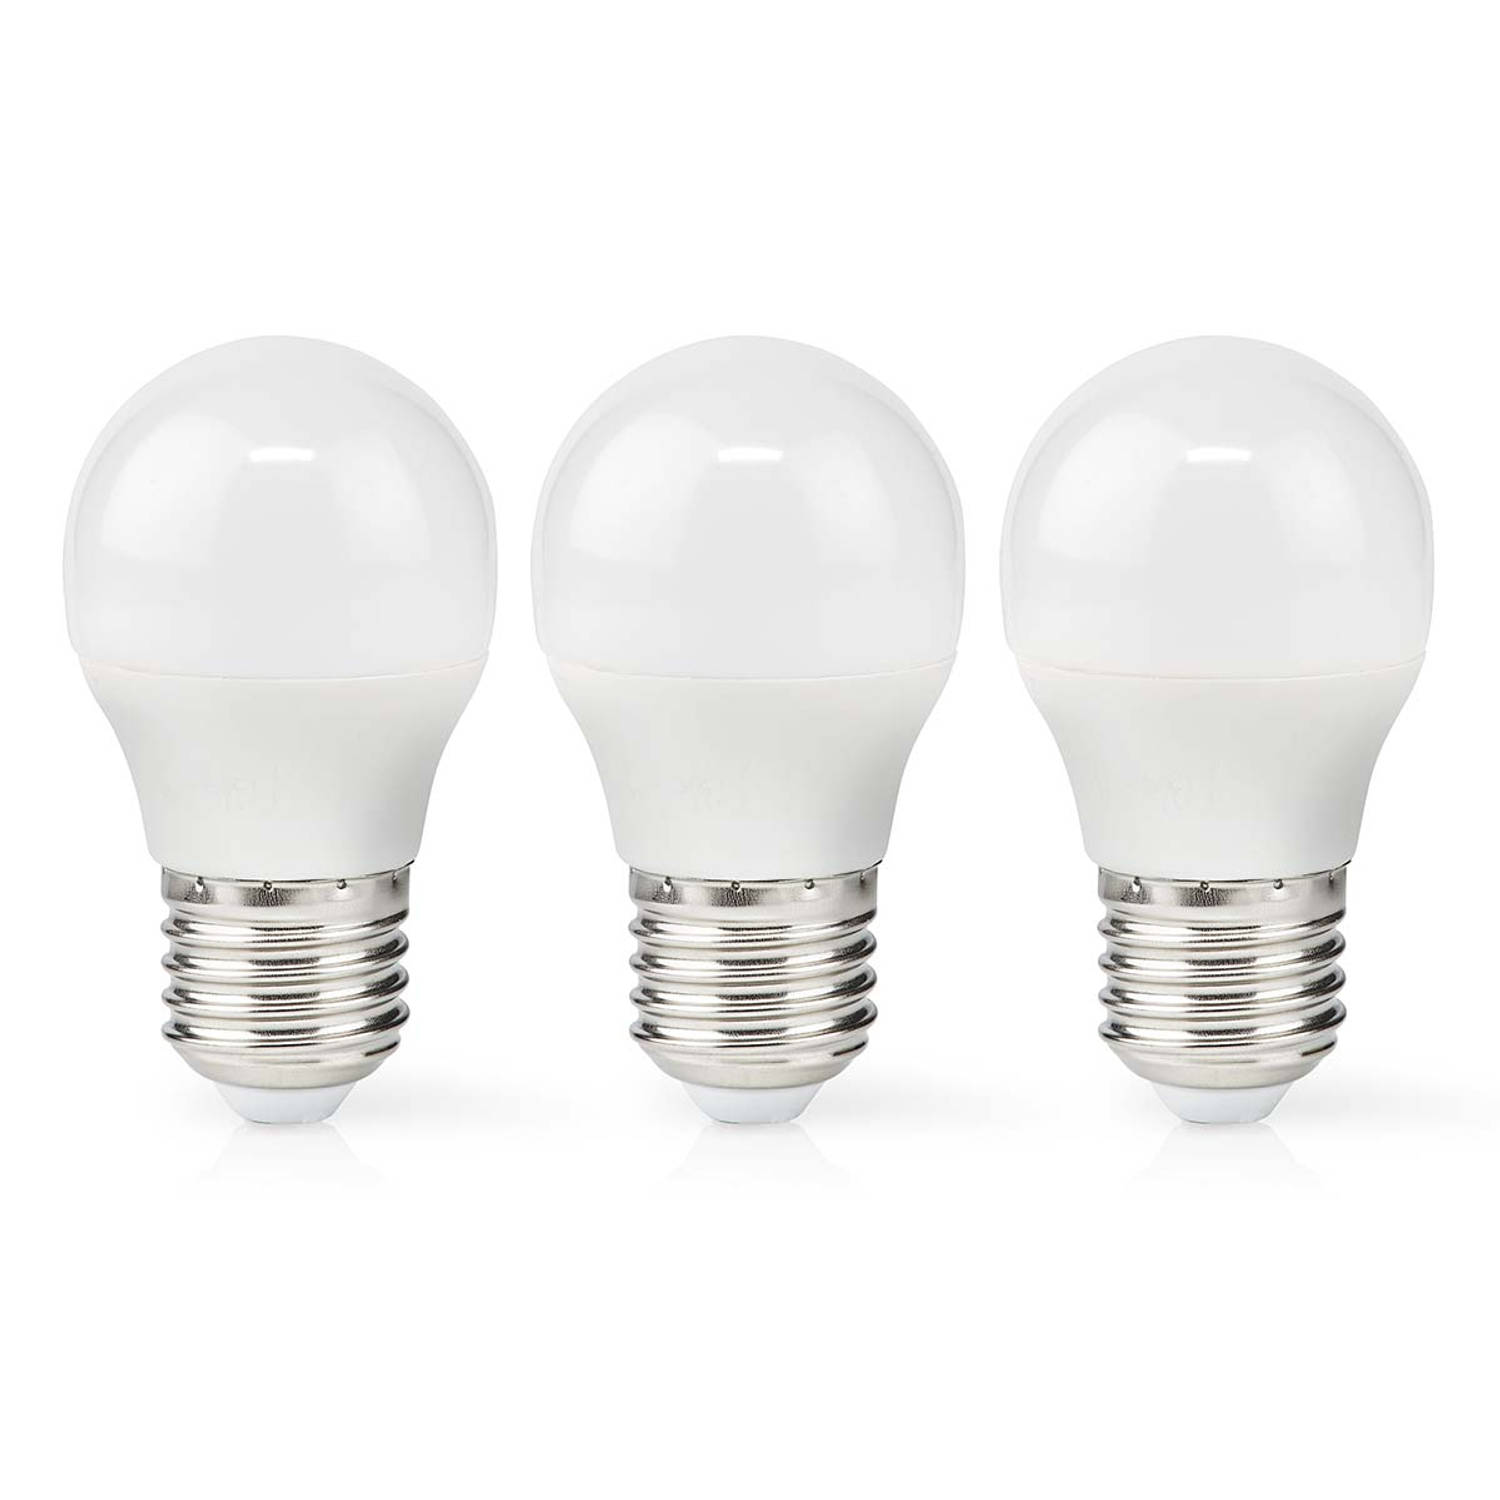 LED-Lamp E27 | G45 | 4.9 W | 470 lm | 2700 K | 3 stuks | 1 stuks LBE27G452P3